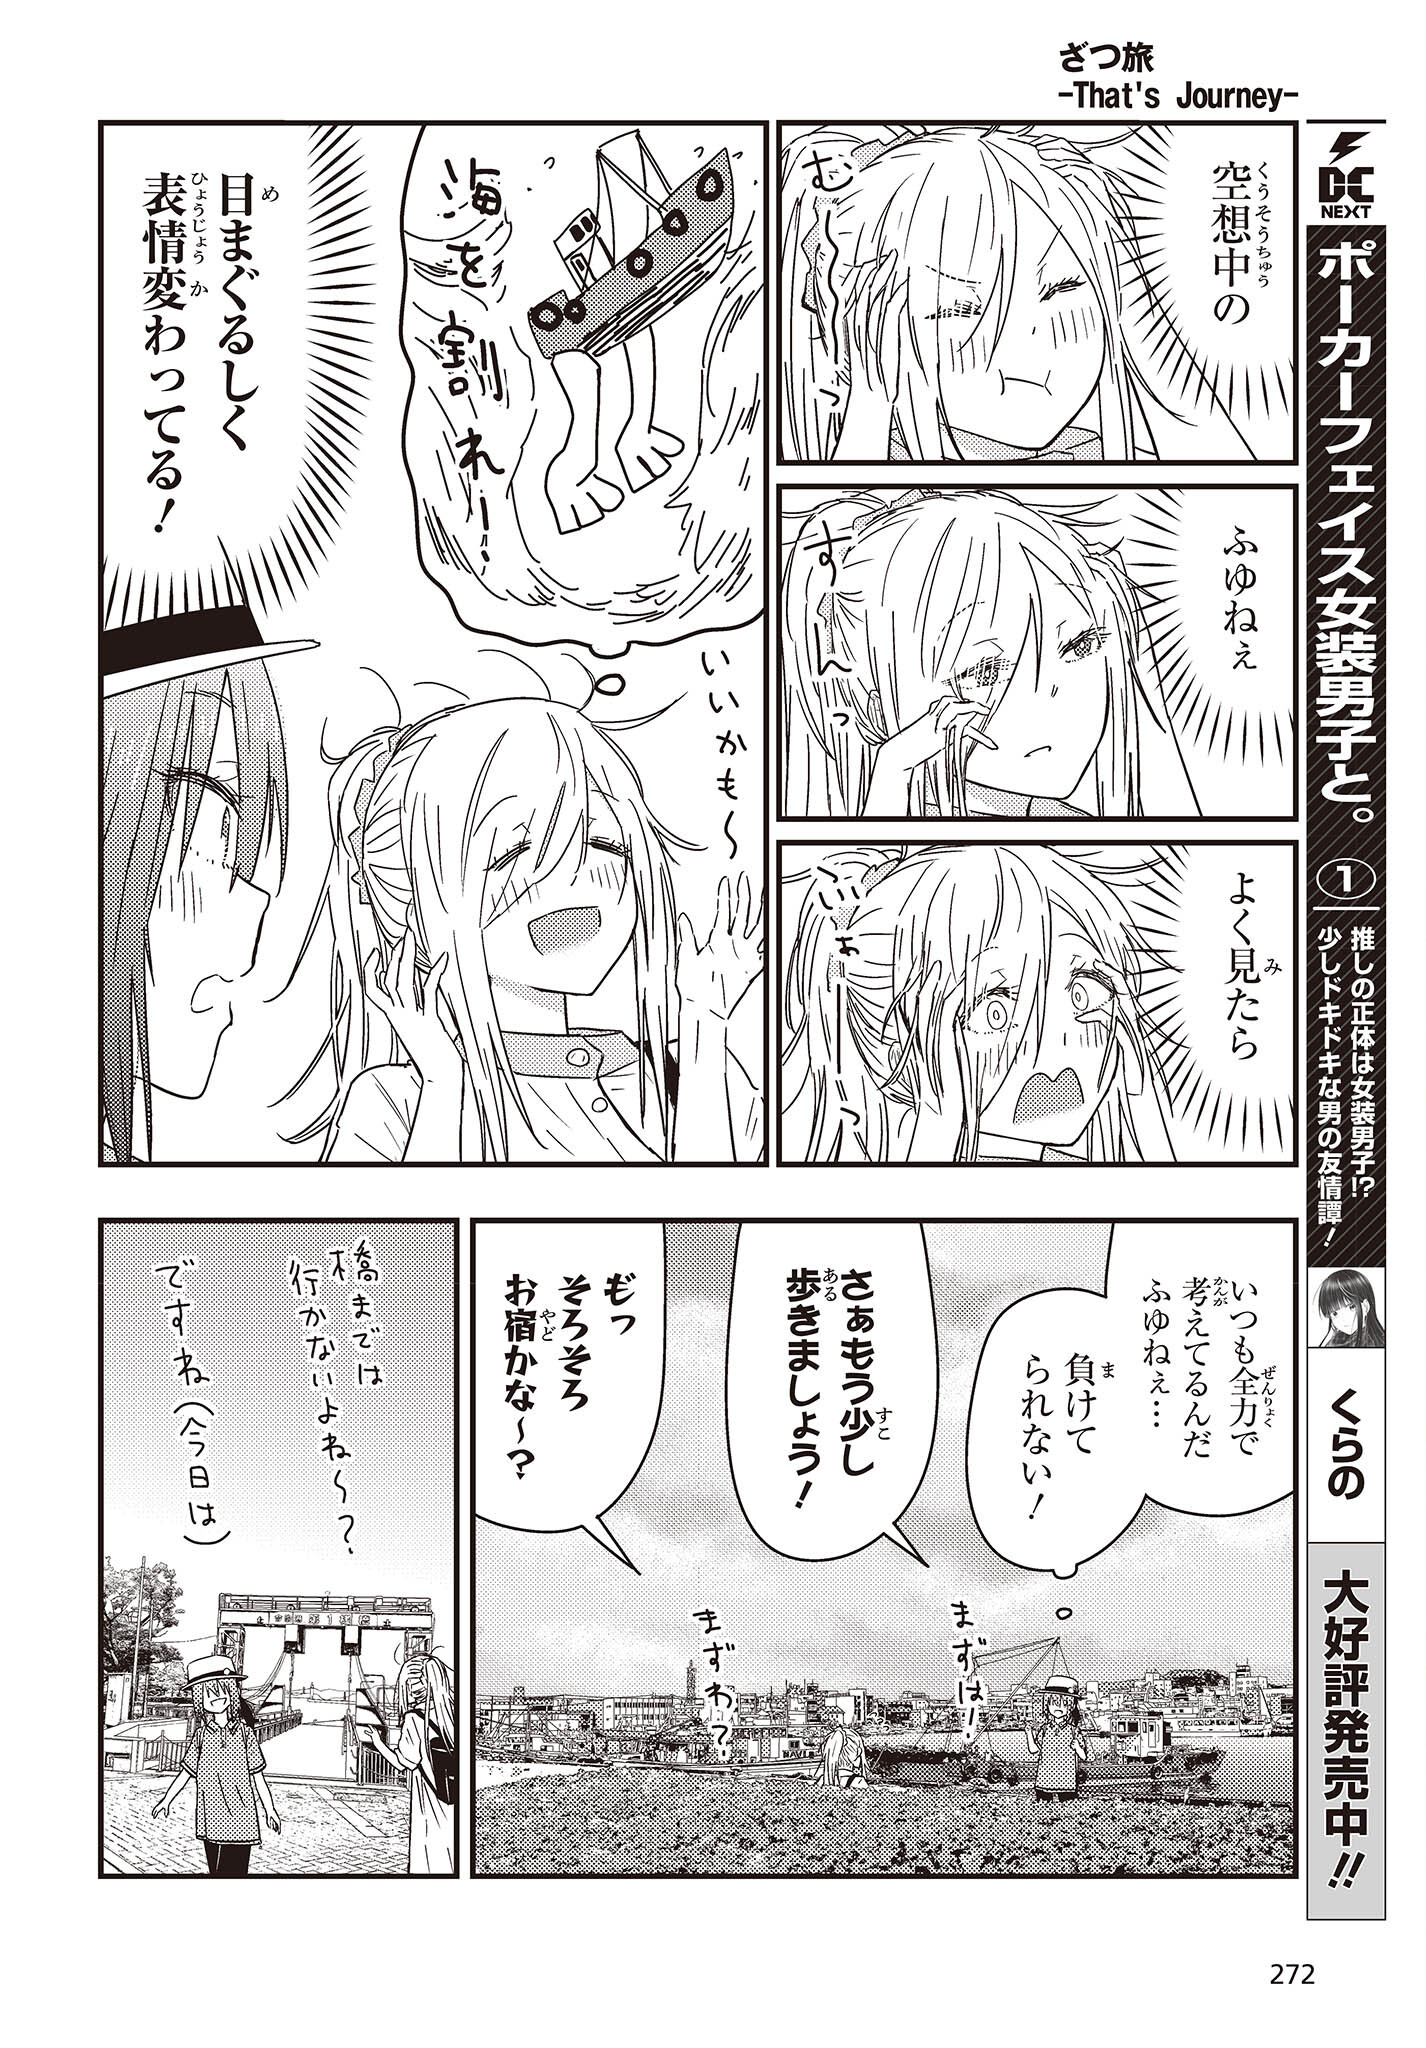 ざつ旅-That’s Journey- 第27話 - Page 12